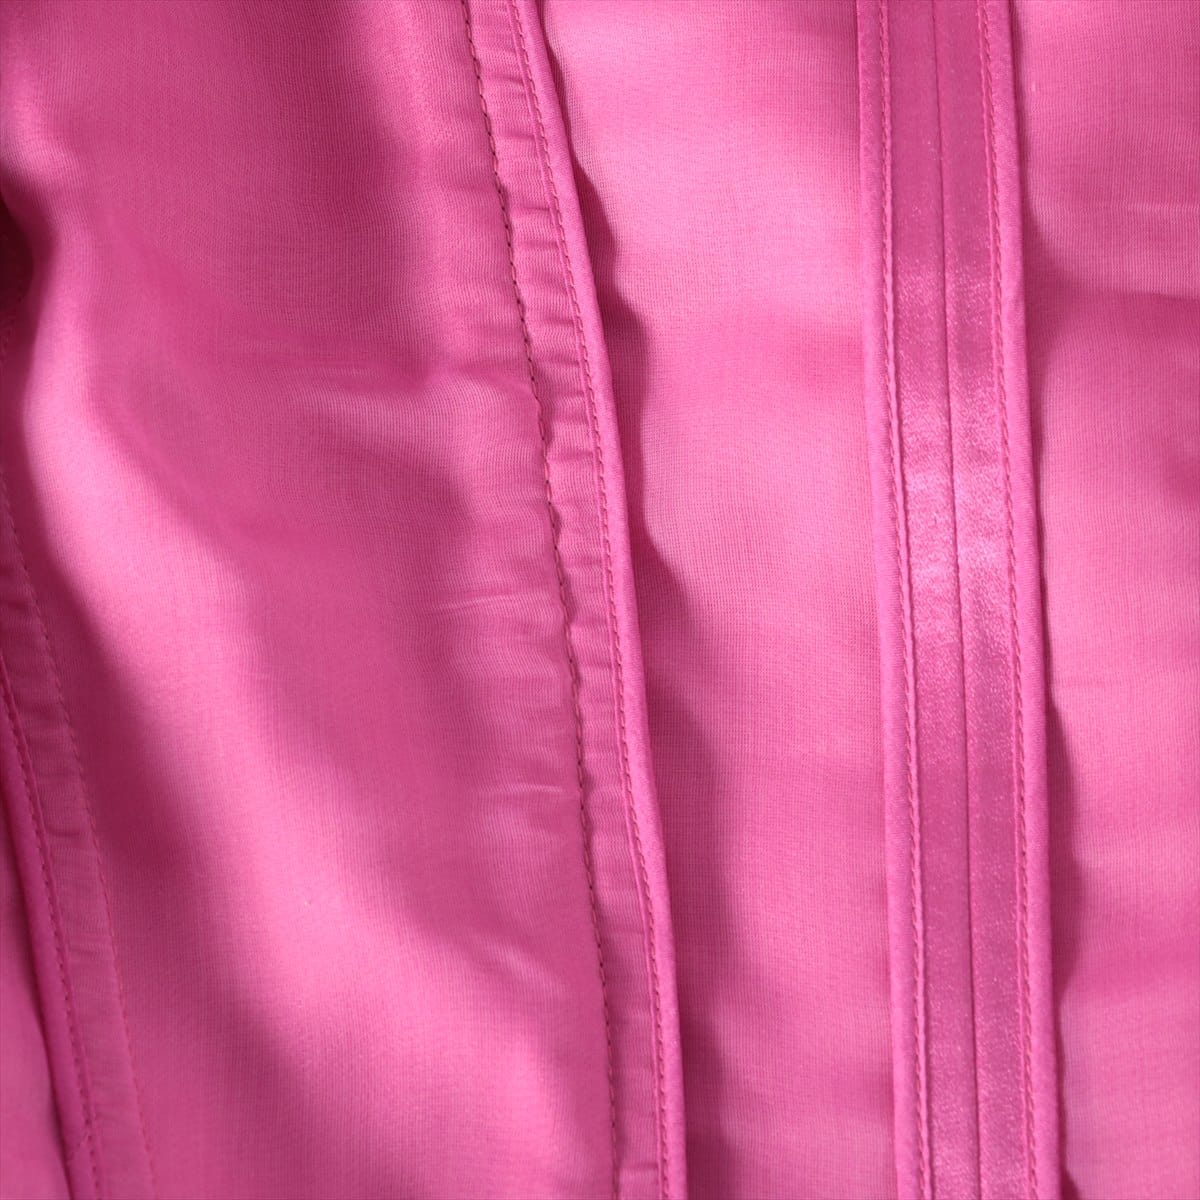 Louis Vuitton Silk Dress 36 Ladies' Pink